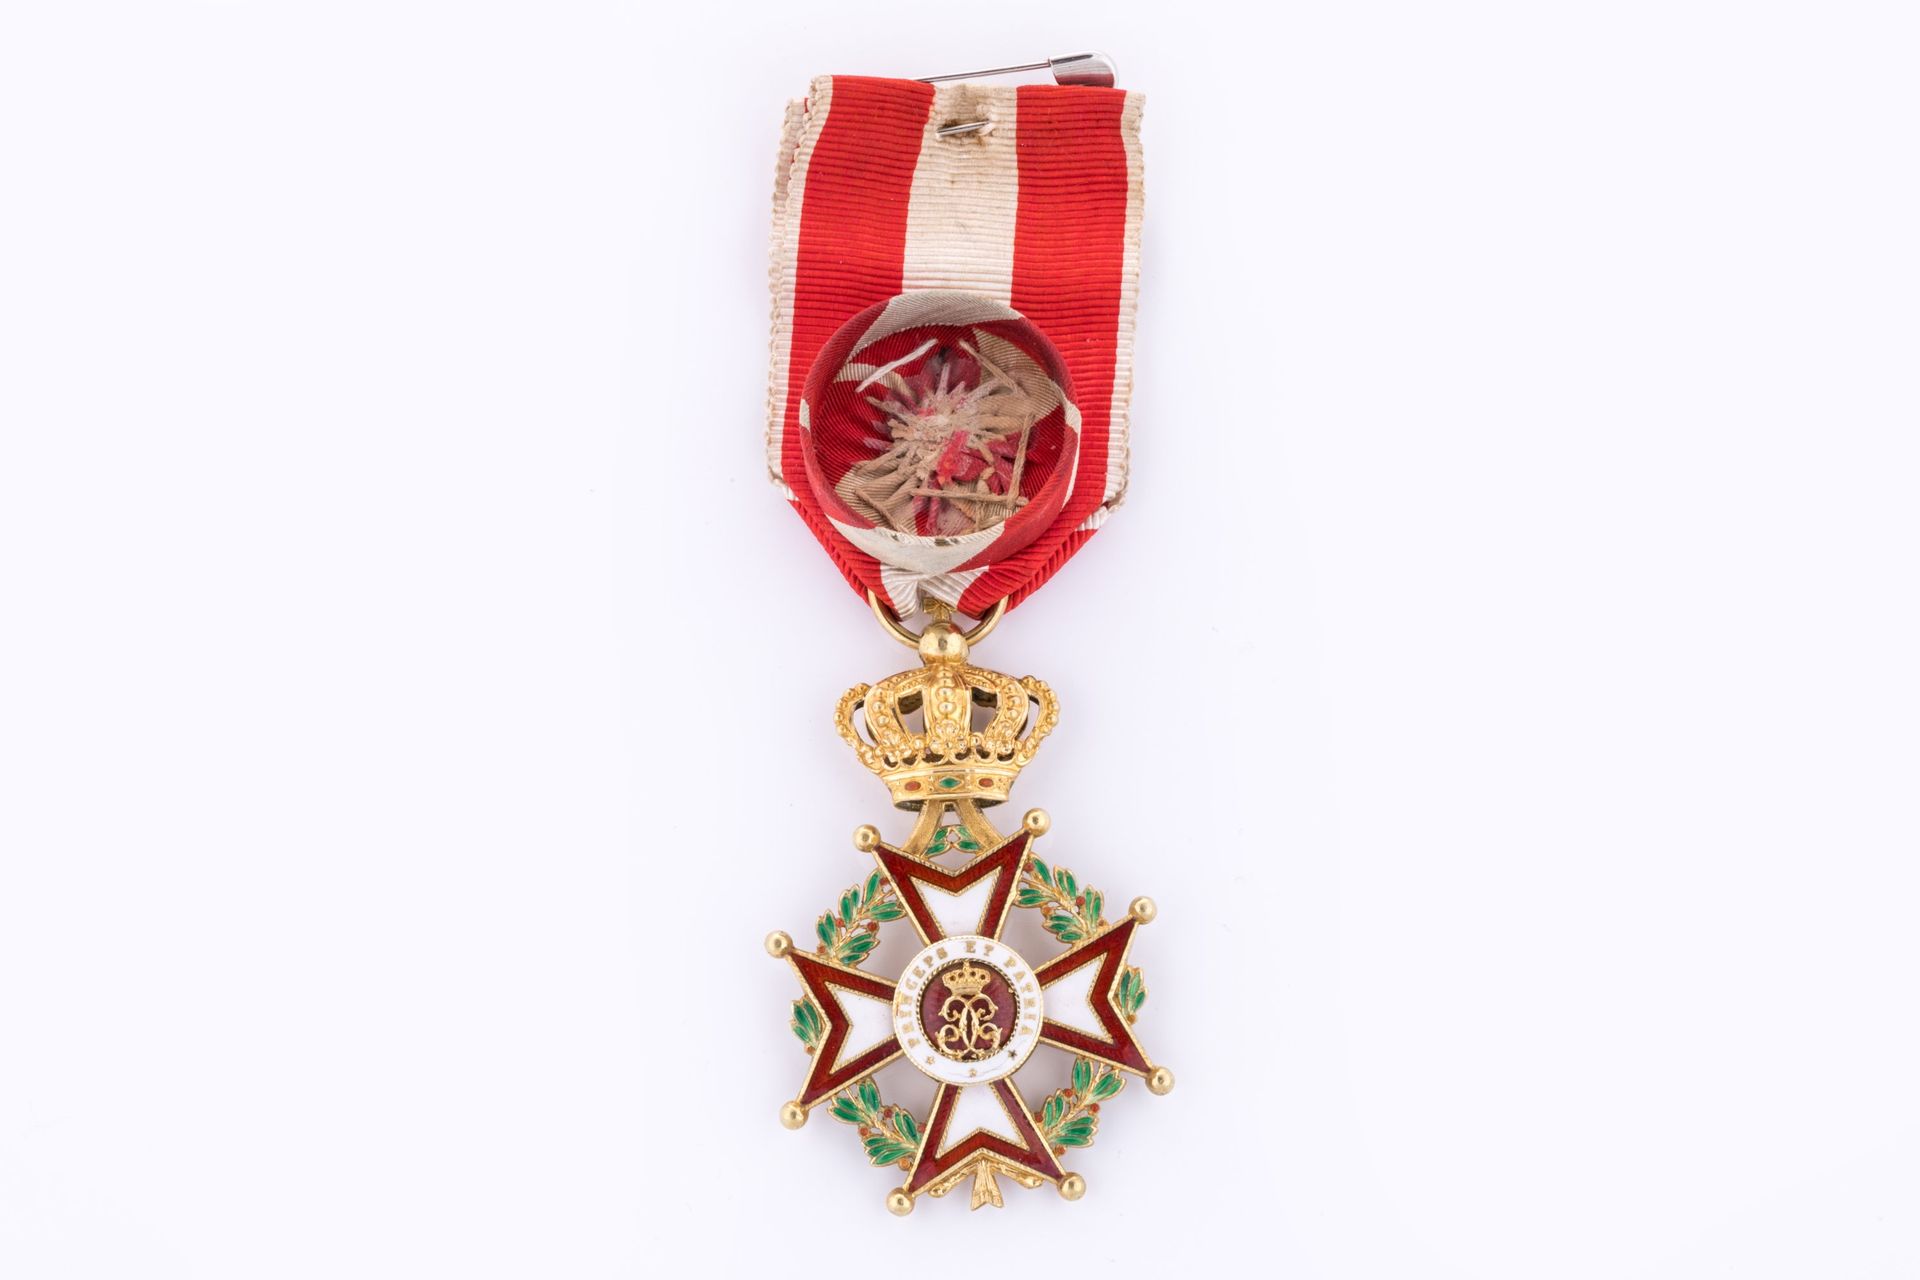 Null 摩纳哥 - 圣查尔斯勋章（1858 年创建） 
军官之星 

金色和珐琅。绶带。

高 64 宽 40 毫米。 
毛重 20 克。
T.T.B. 
(&hellip;